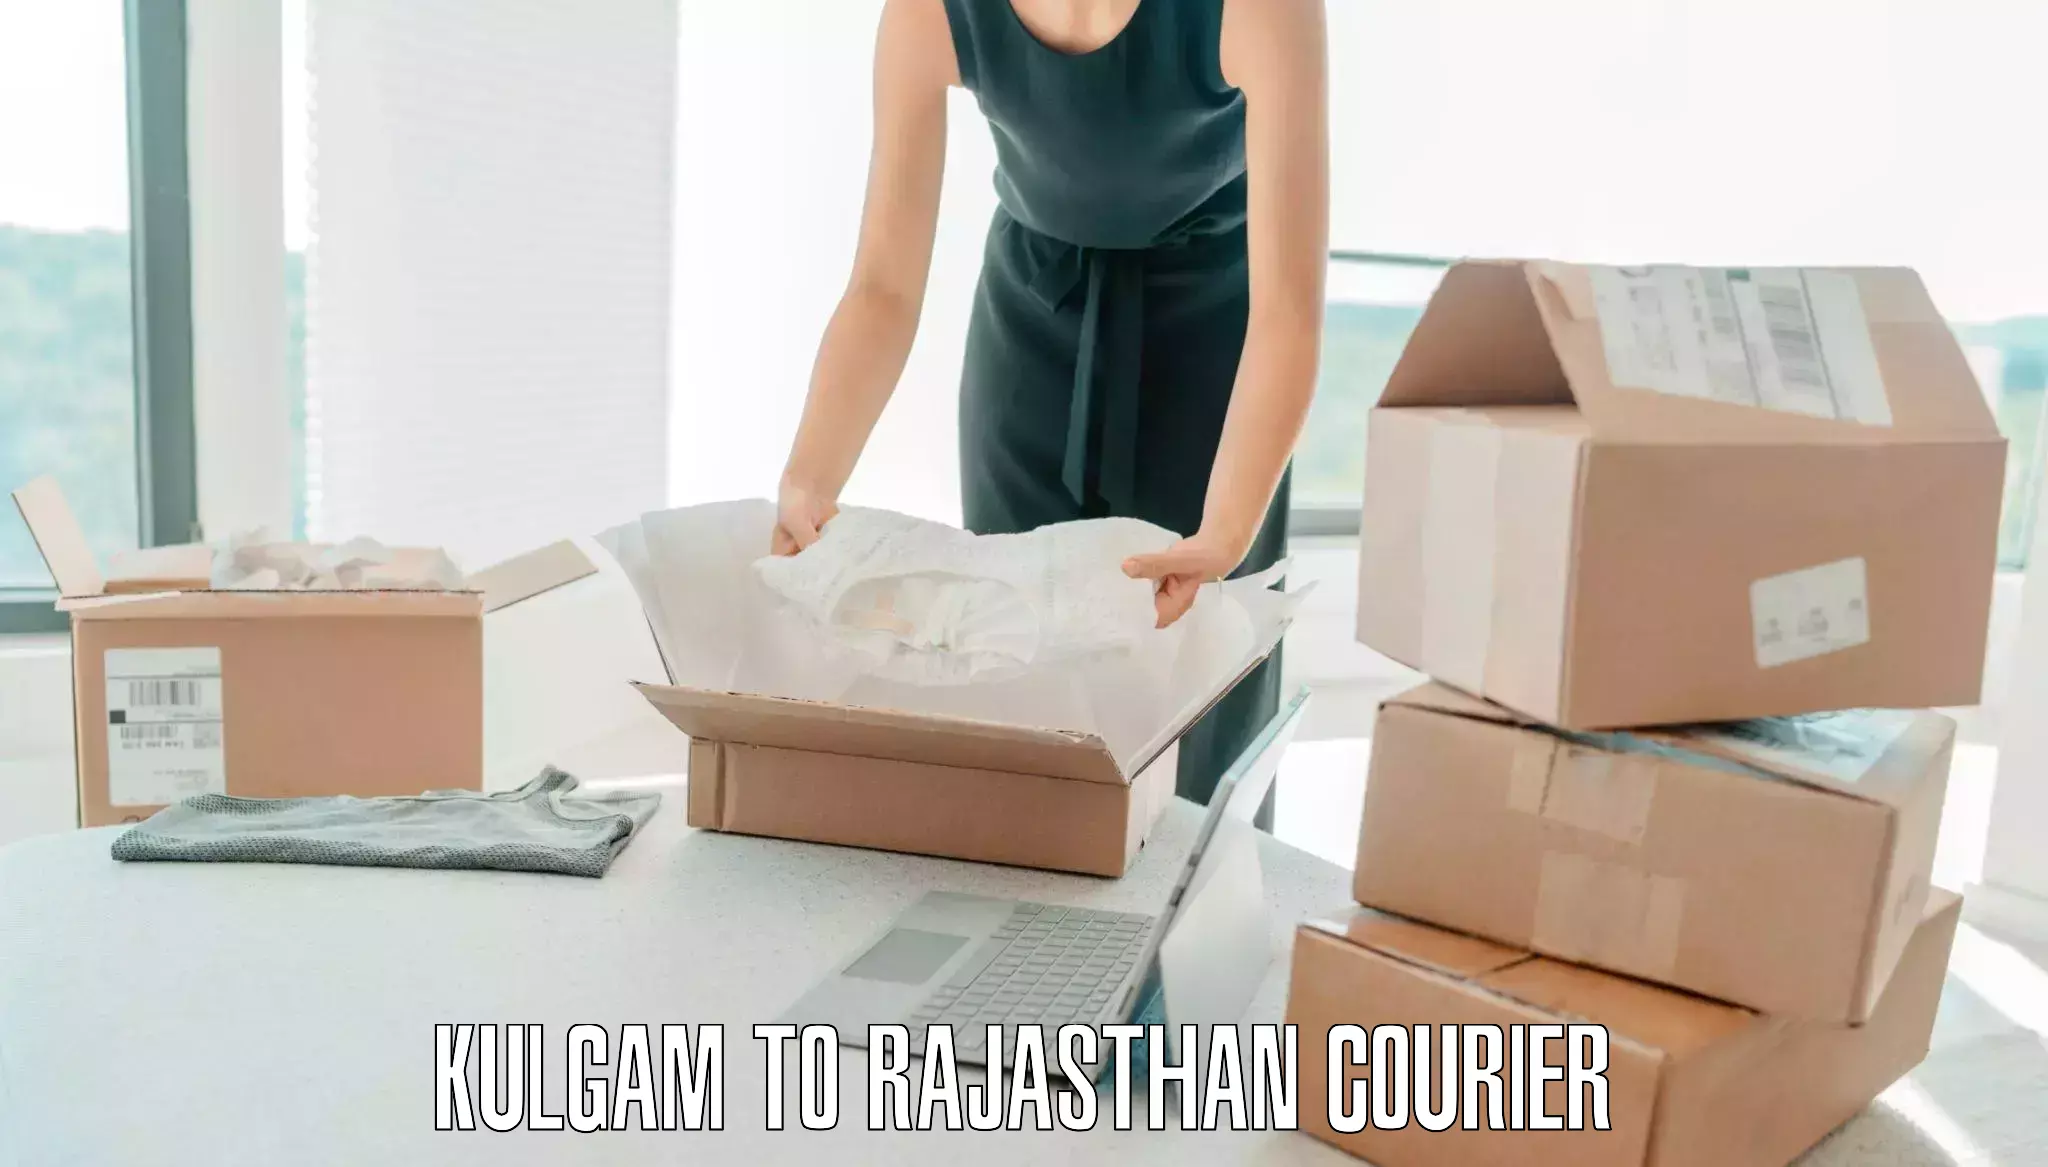 Luggage shipping service Kulgam to Nagaur